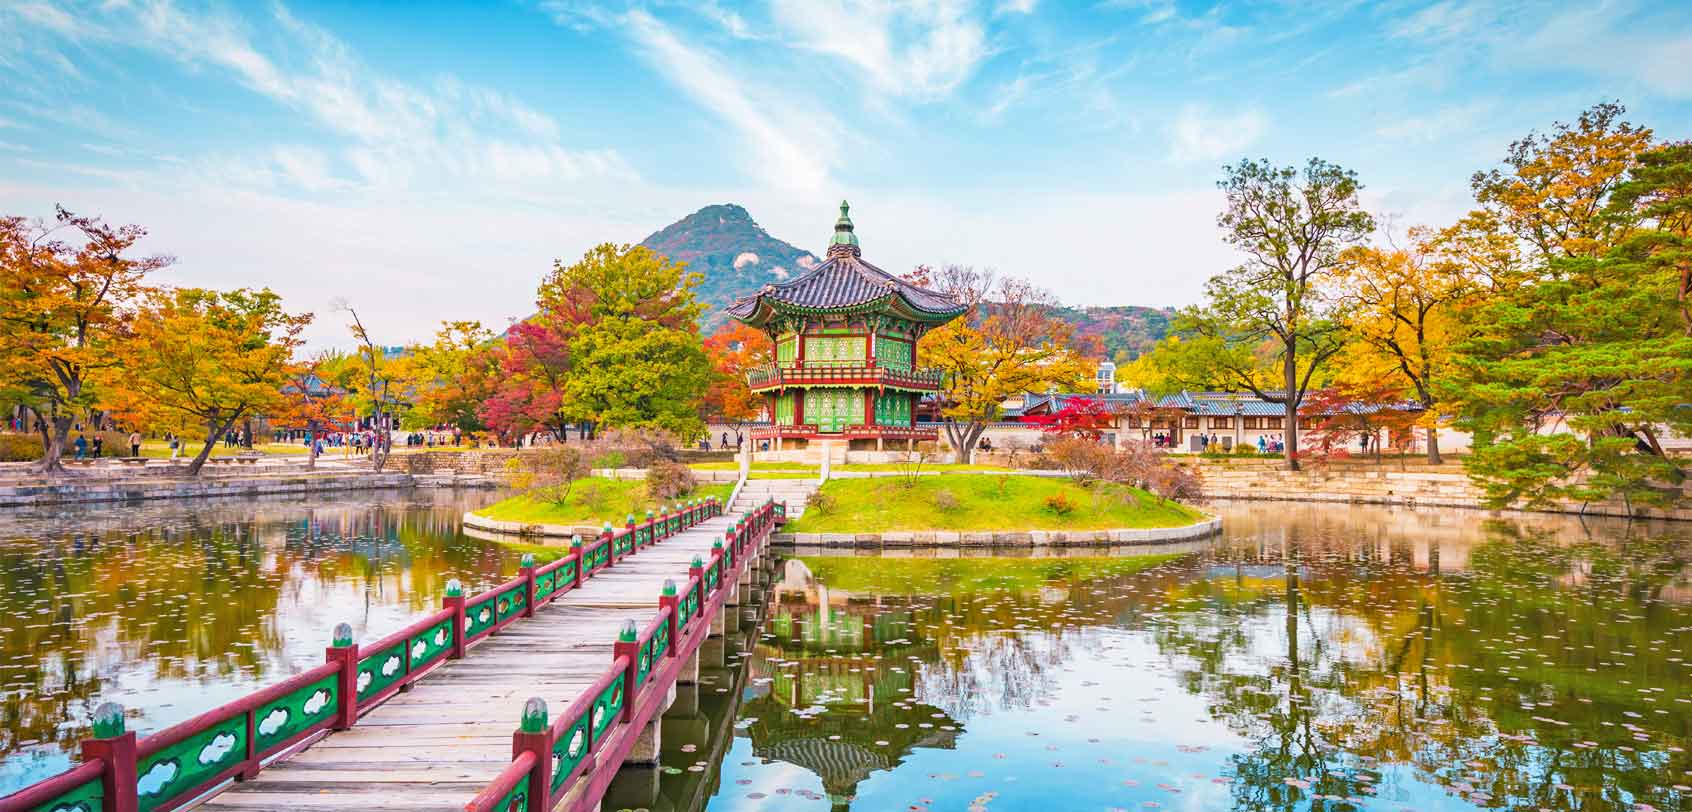 Seoul Itinerary: Gyeongbokgung Palace